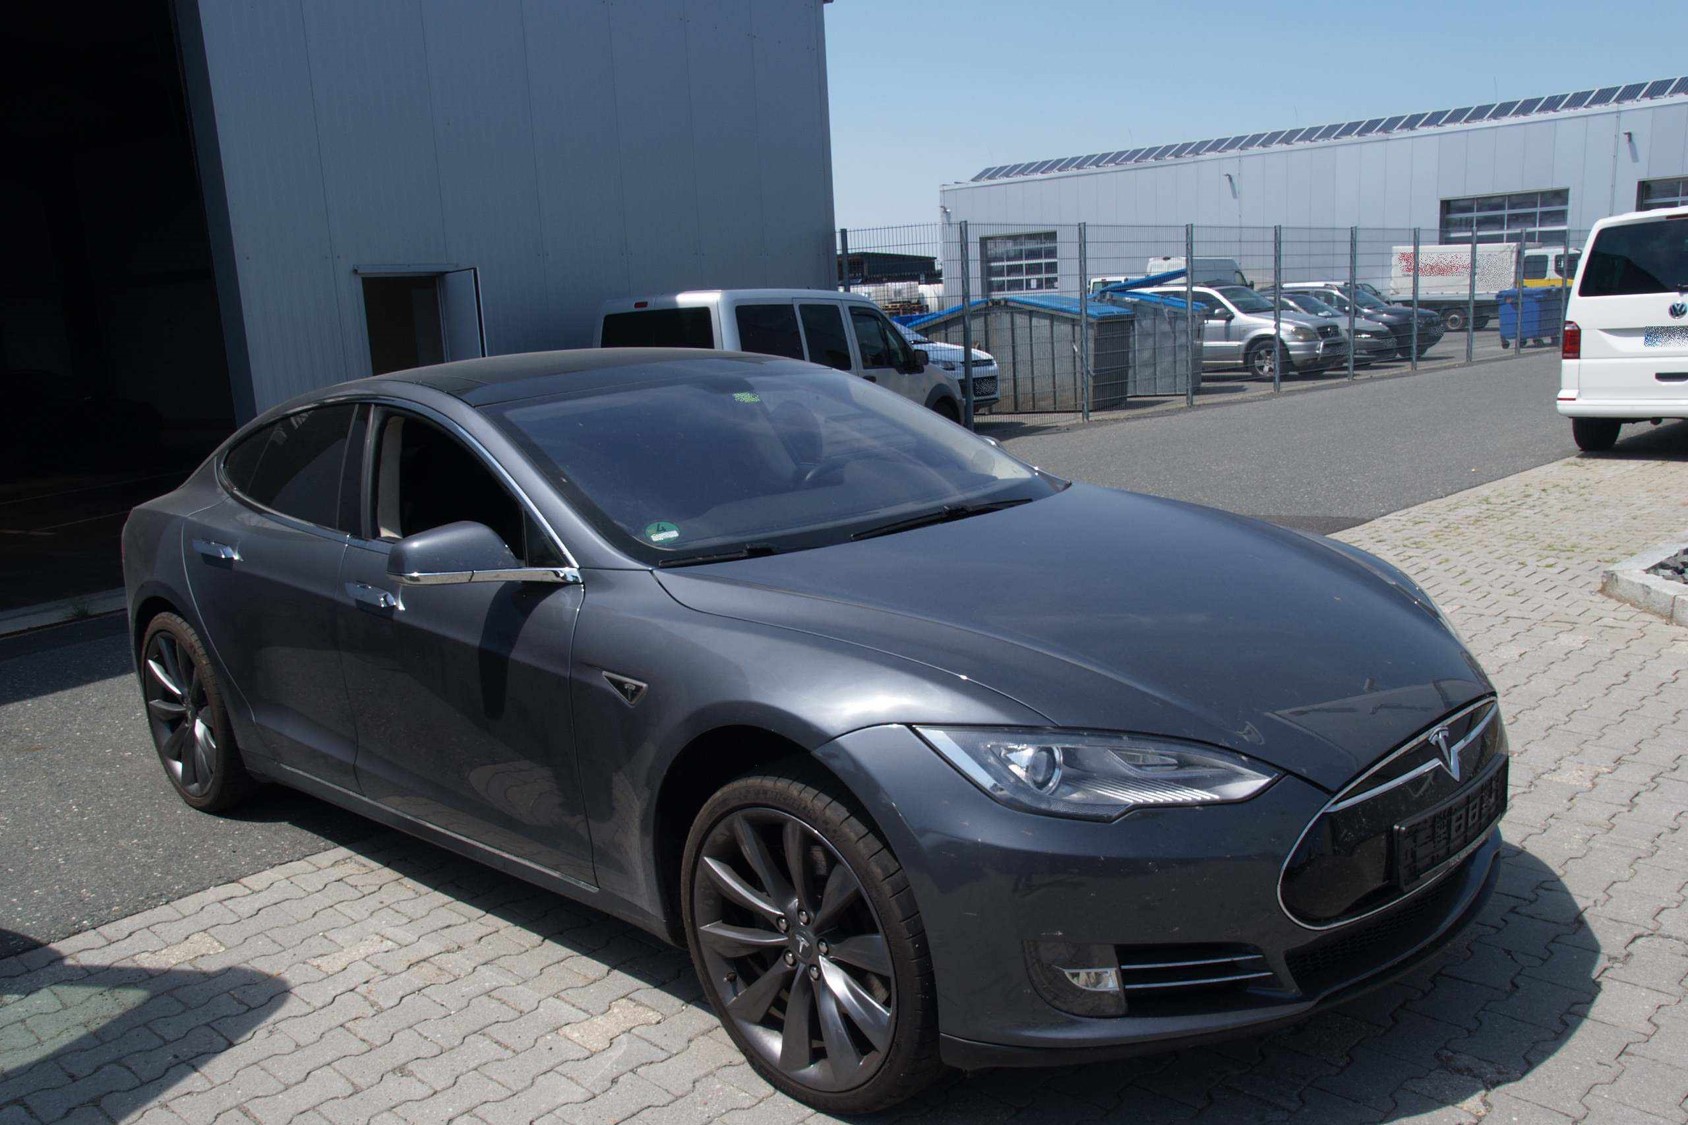 Bild eines Tesla Model S